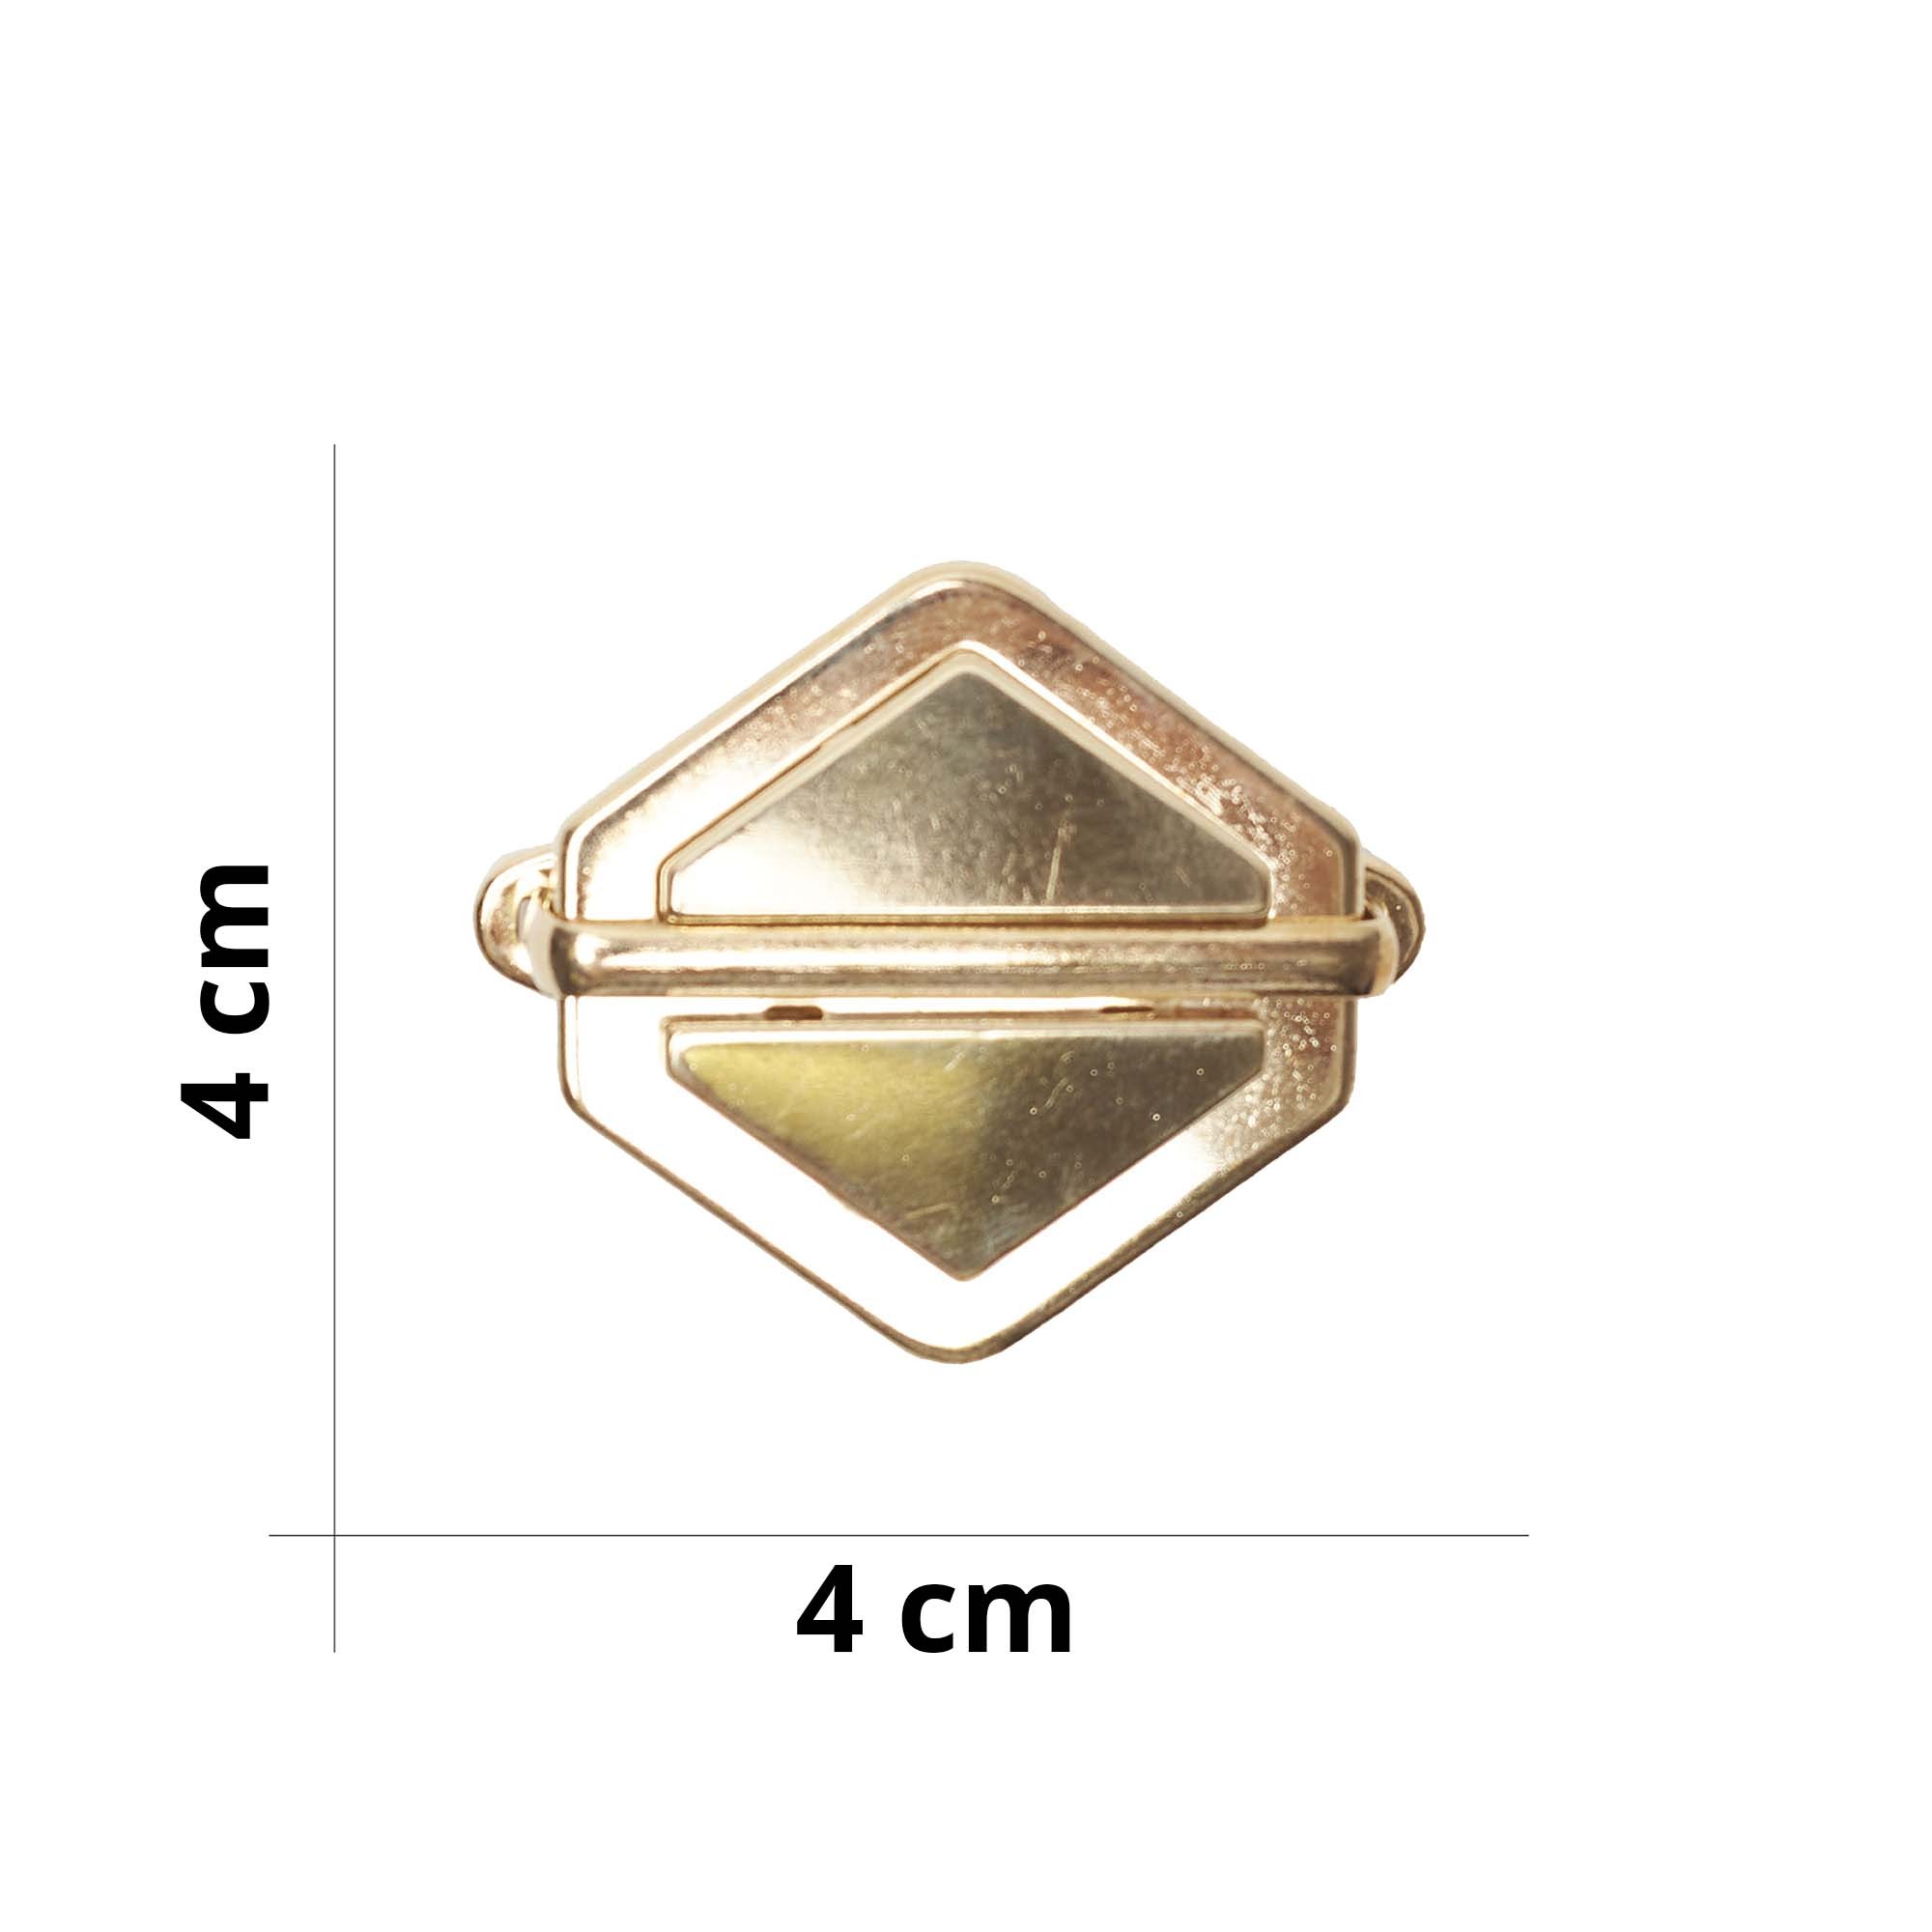 Chiusura a pulsante a forma esagonale per borse - Misura 4x4 cm